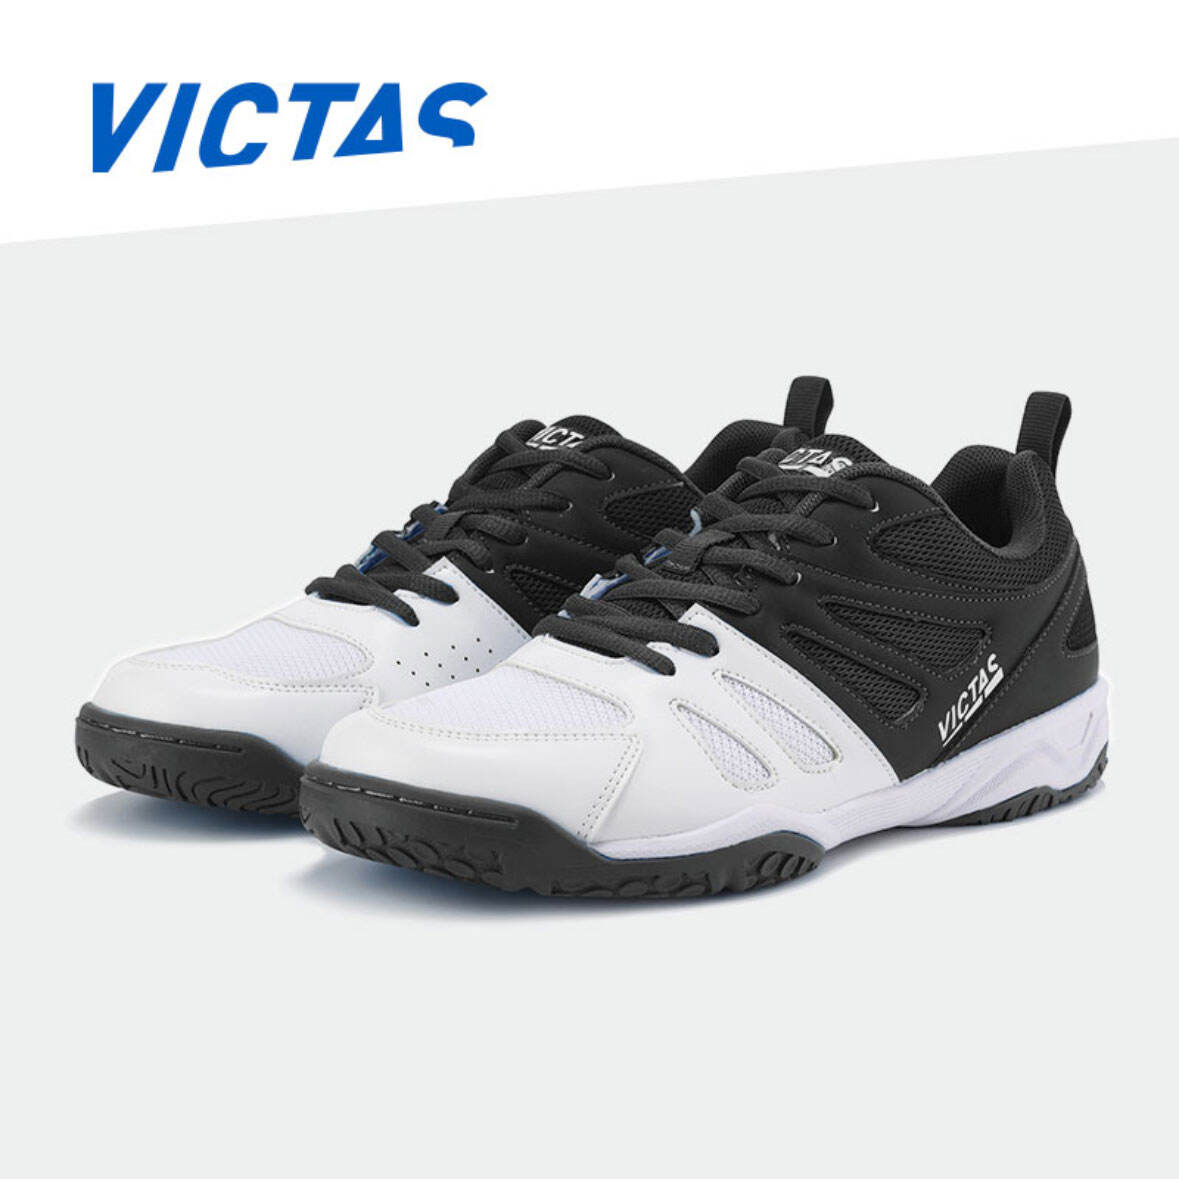 VICTAS维克塔斯 乒乓球鞋 专业训练球鞋 减震透气耐磨男女同款乒乓运动鞋 085201/VC-622 黑白色